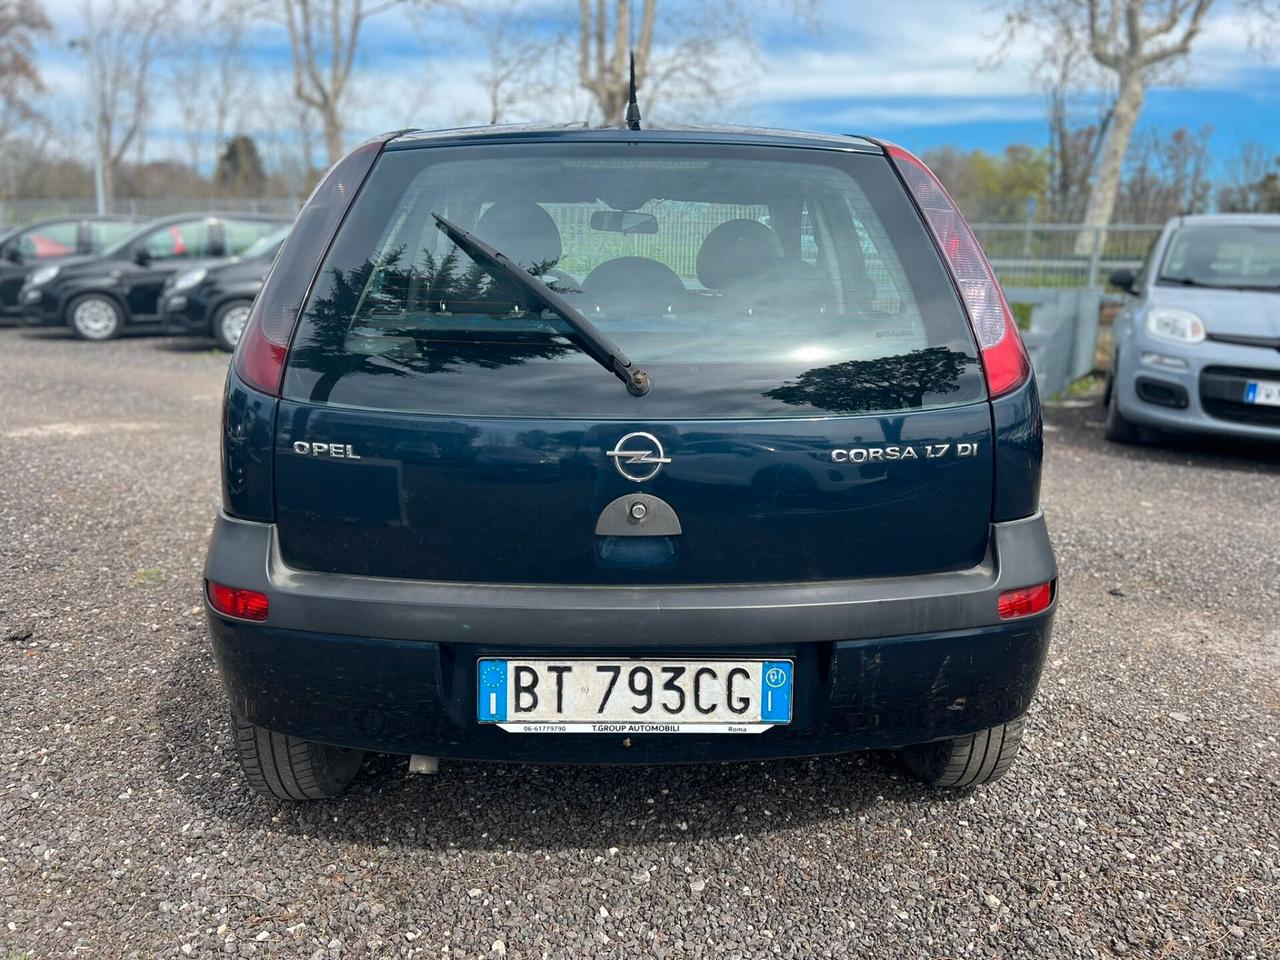 Opel Corsa 1.7 16V DI fin no busta paga